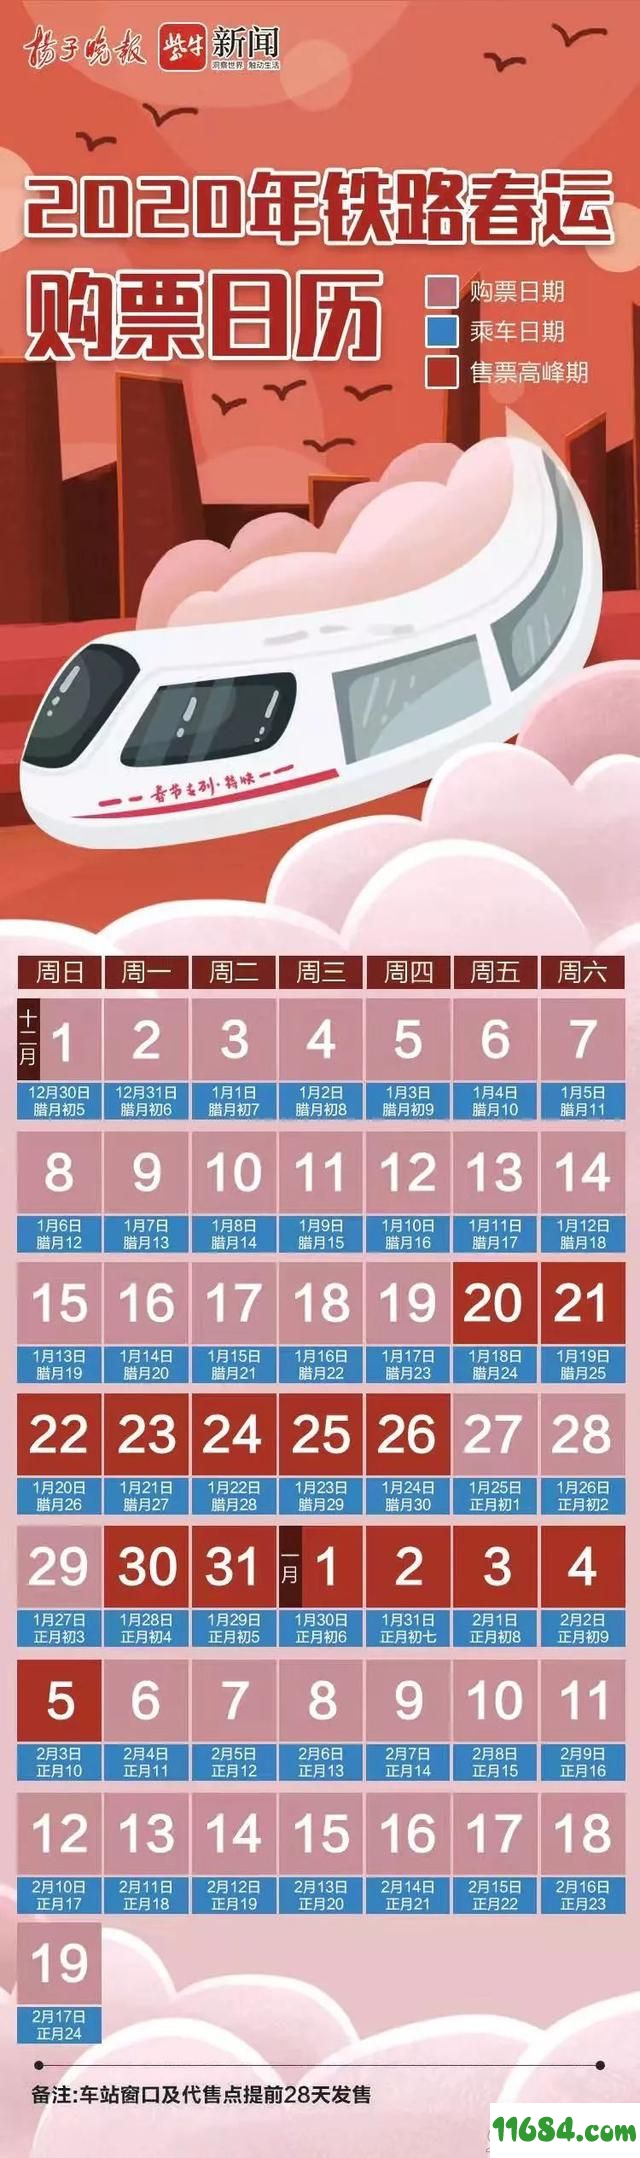 春节购票日历下载-2020春节购票日历（JPEG格式）下载